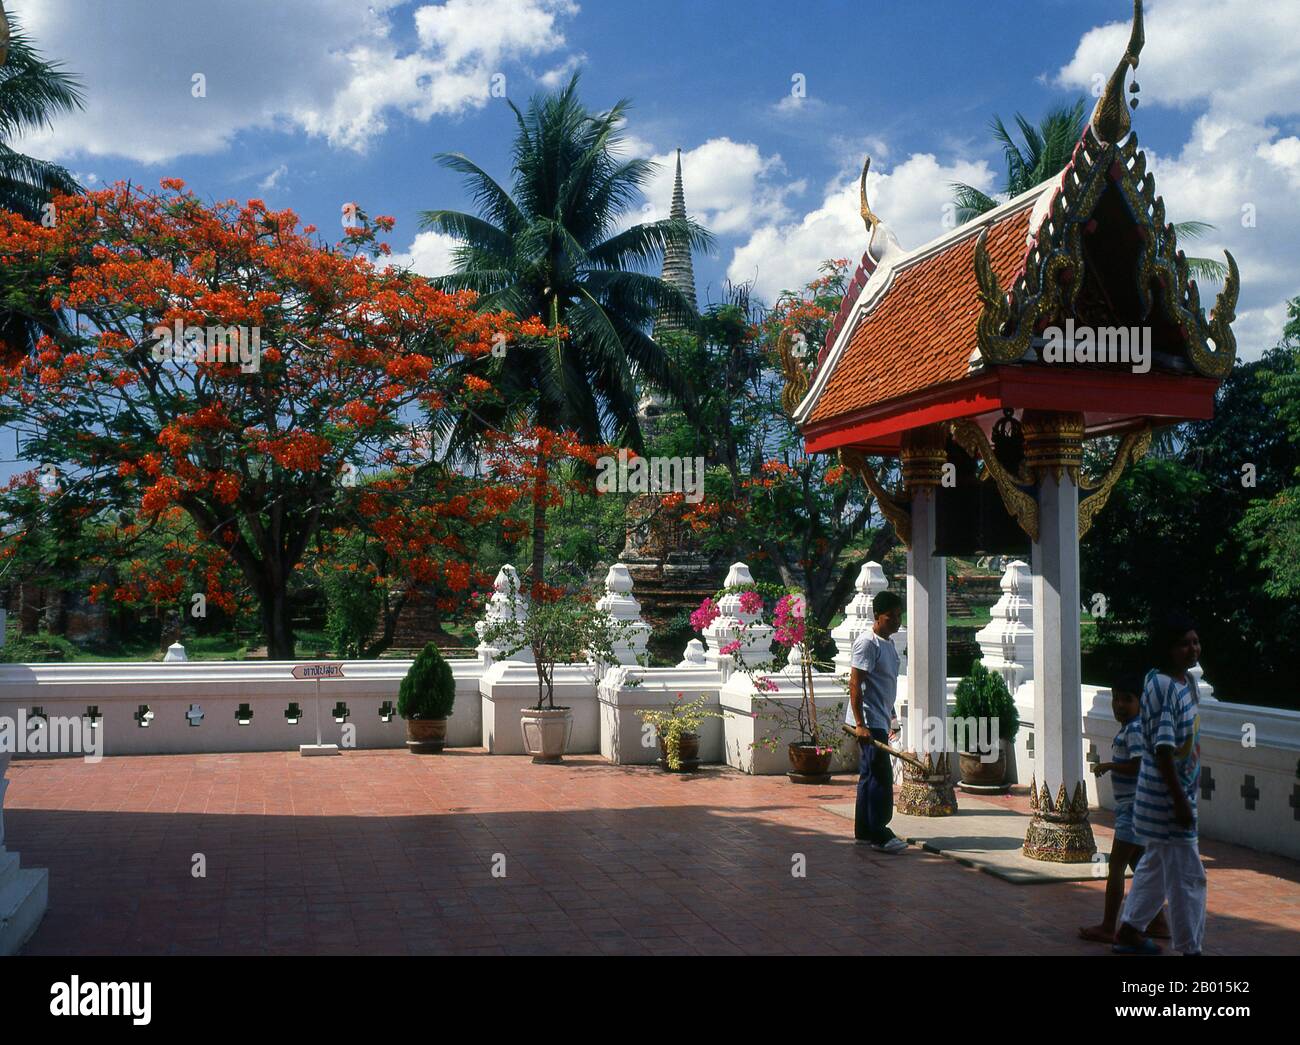 Thailandia: Viharn Mongkol Bopit, Ayutthaya Historical Park. Viharn Mongkol Bopit (Wihaan Mongkhon Bophit) contiene un'immagine di Buddha di bronzo del XV secolo, una delle più grandi della Thailandia. Ayutthaya (Ayudhya)) era un regno siamese che esisteva dal 1351 al 1767. Ayutthaya era amichevole verso i commercianti stranieri, compreso il cinese, vietnamita (Annamese), indiani, giapponesi e persiani, E poi le potenze europee, permettendo loro di creare villaggi fuori dalle mura della città. Nel sedicesimo secolo, è stato descritto dai commercianti stranieri come una delle città più grandi e più ricche nell'est. Foto Stock